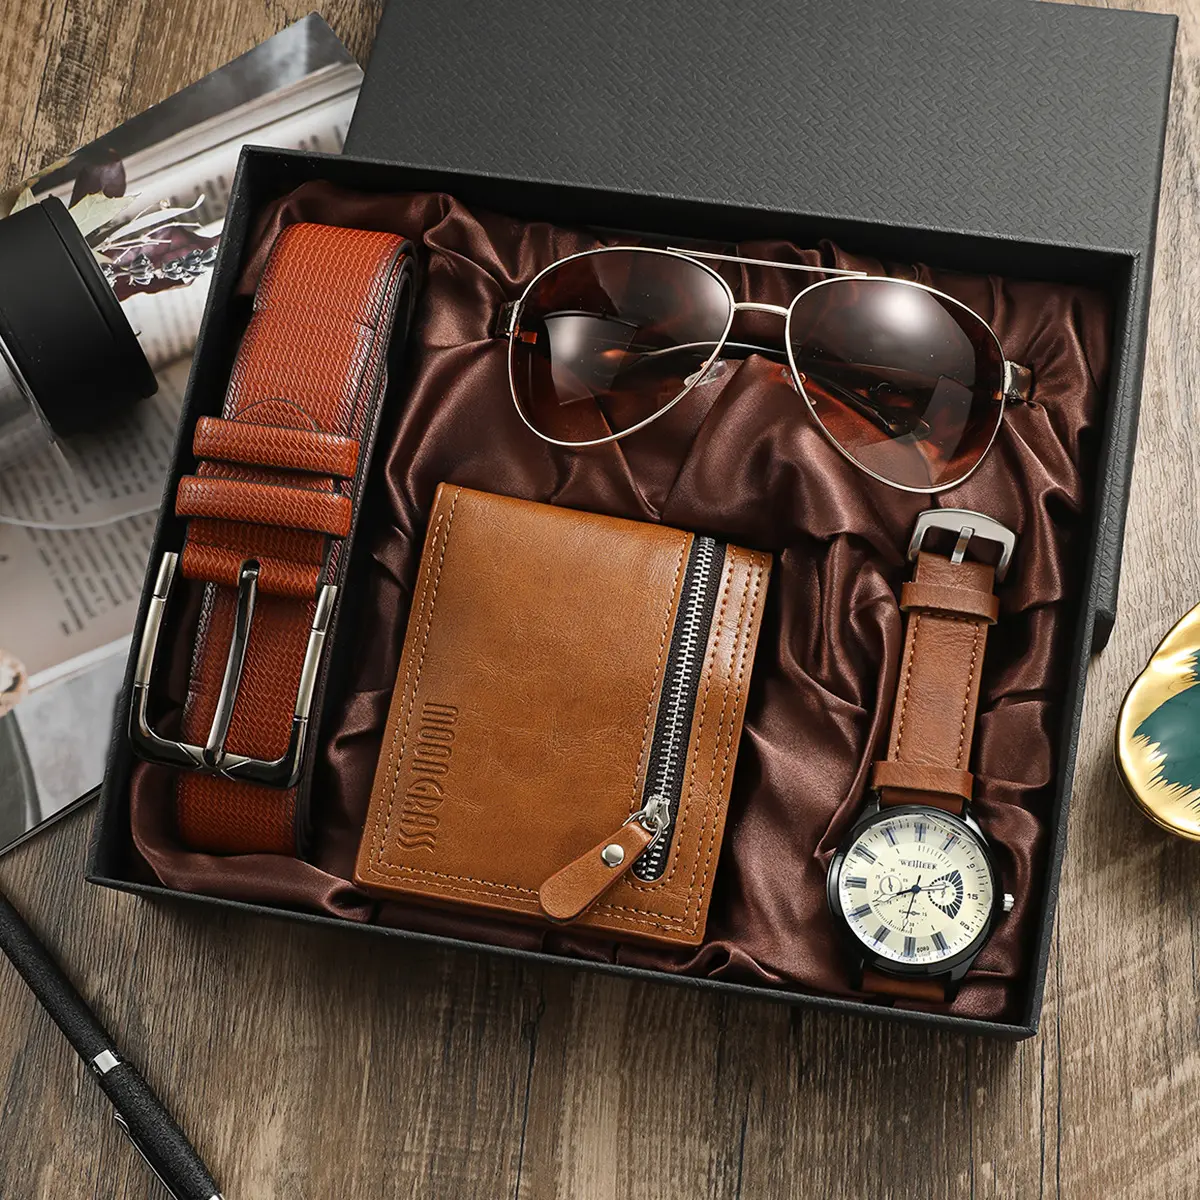 ¡En existencias! 4 unids/set de reloj de alta calidad, regalo para hombres, gafas de sol de moda, cinturón de cuero, BILLETERA, relojes de cuarzo, venta al por mayor